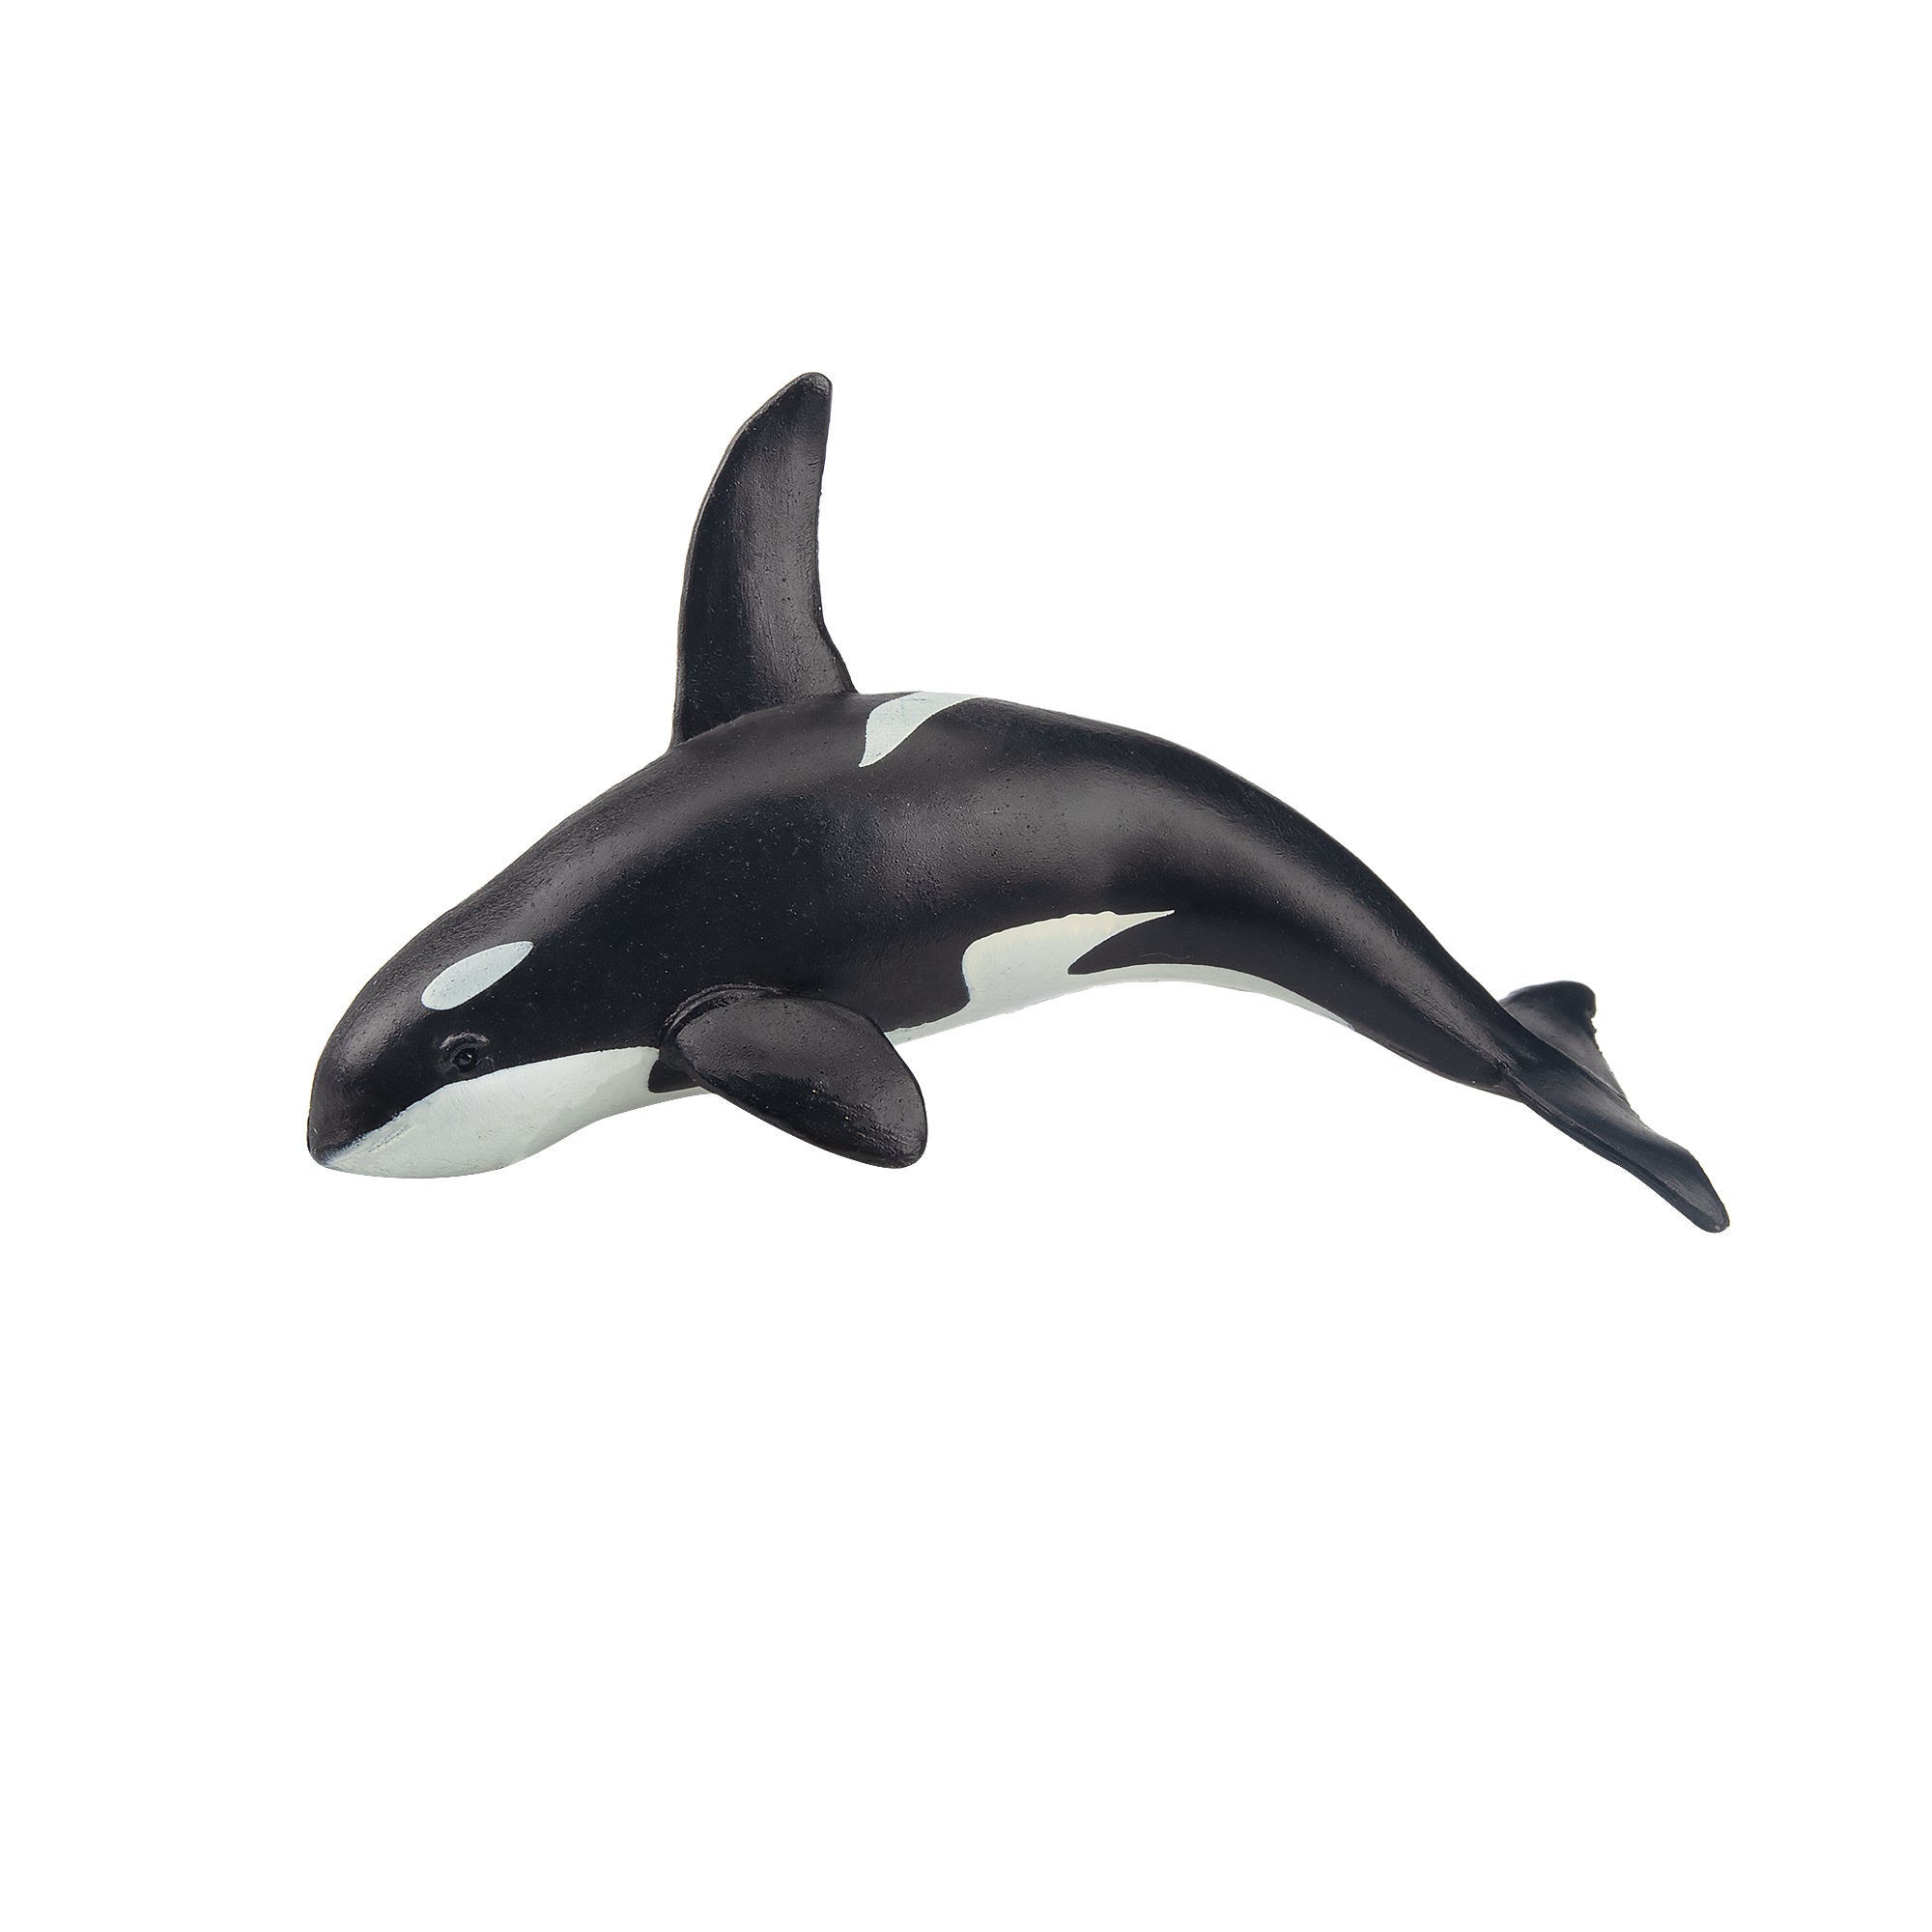 Toymany Killer Whale Figurine Toy